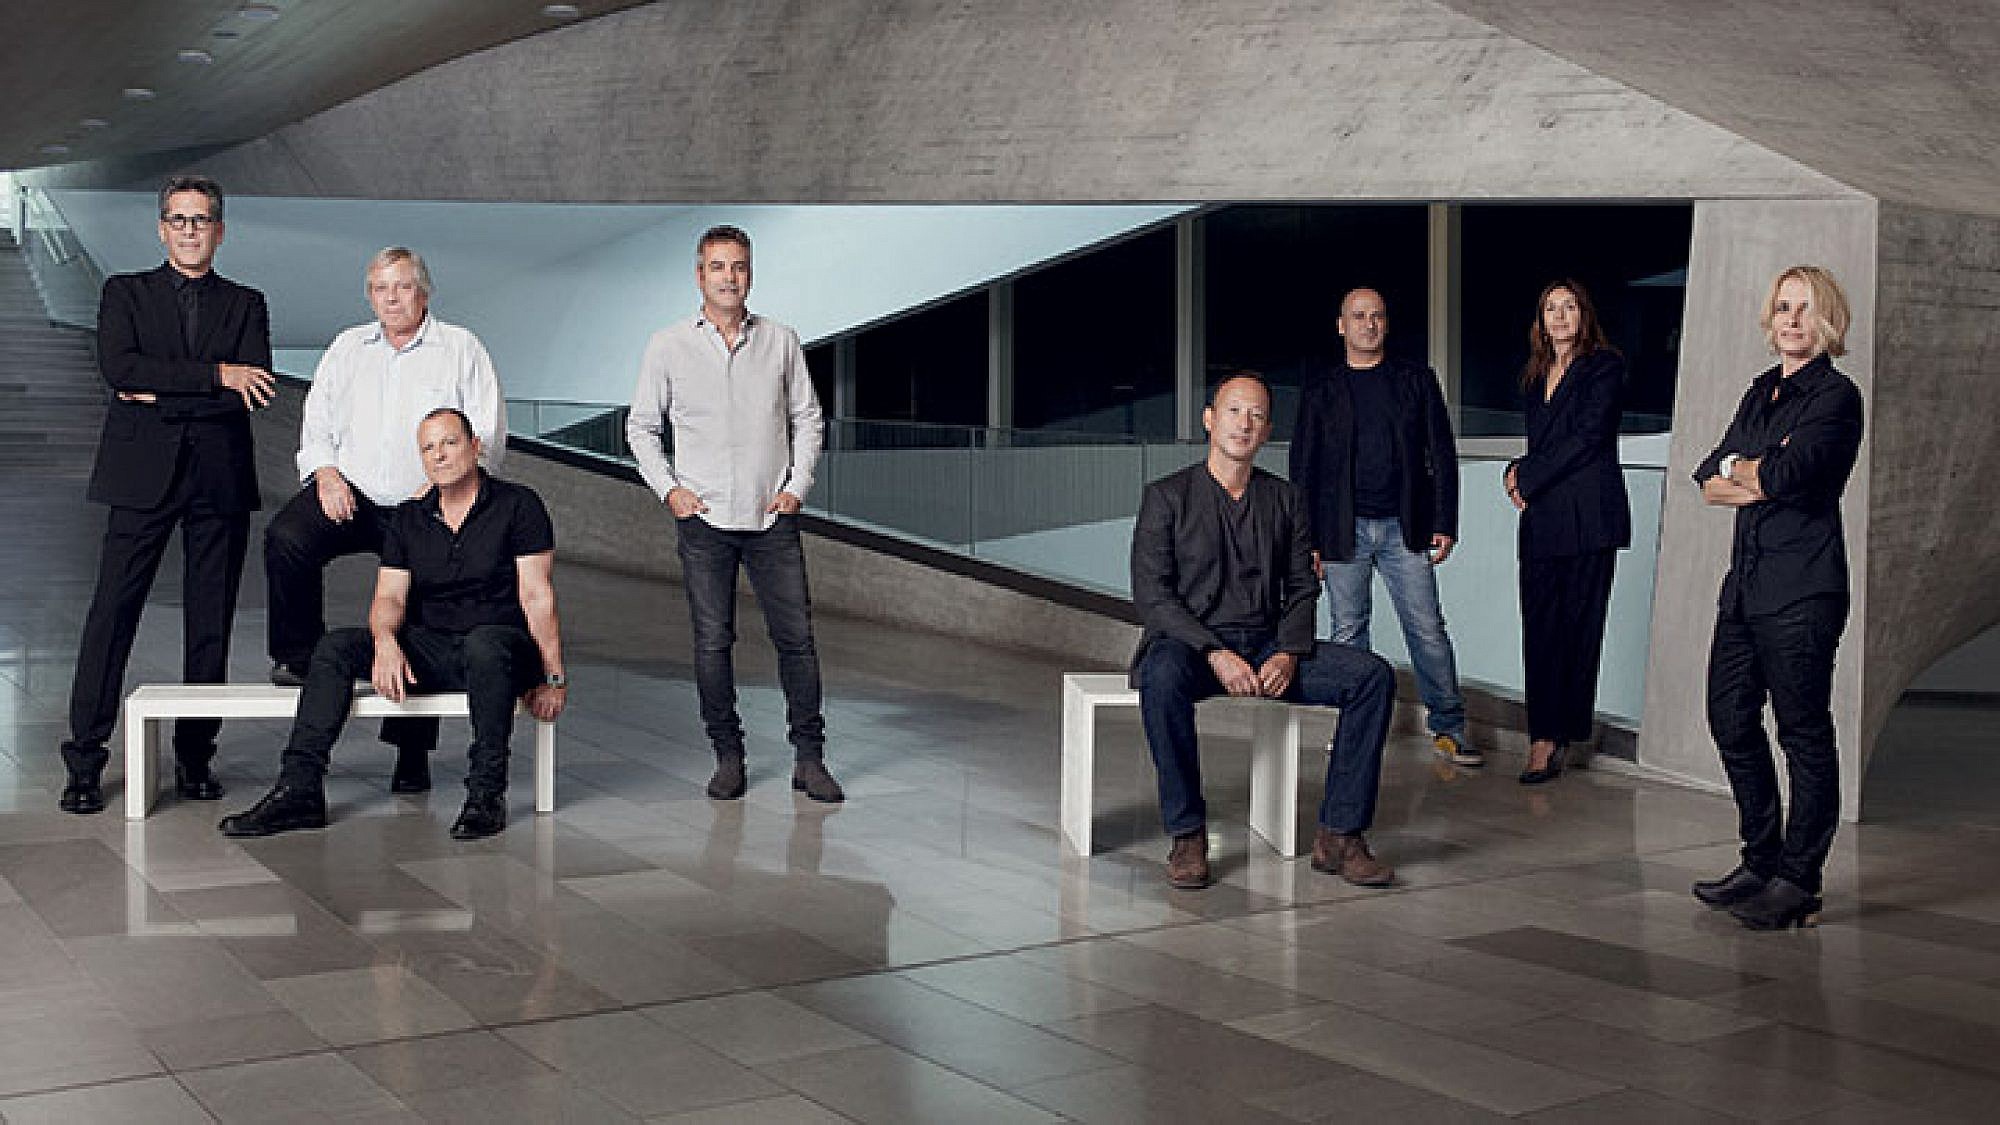 נבחרת האדריכלים על רקע מוזיאון תל אביב | צילום: Jan Lehner